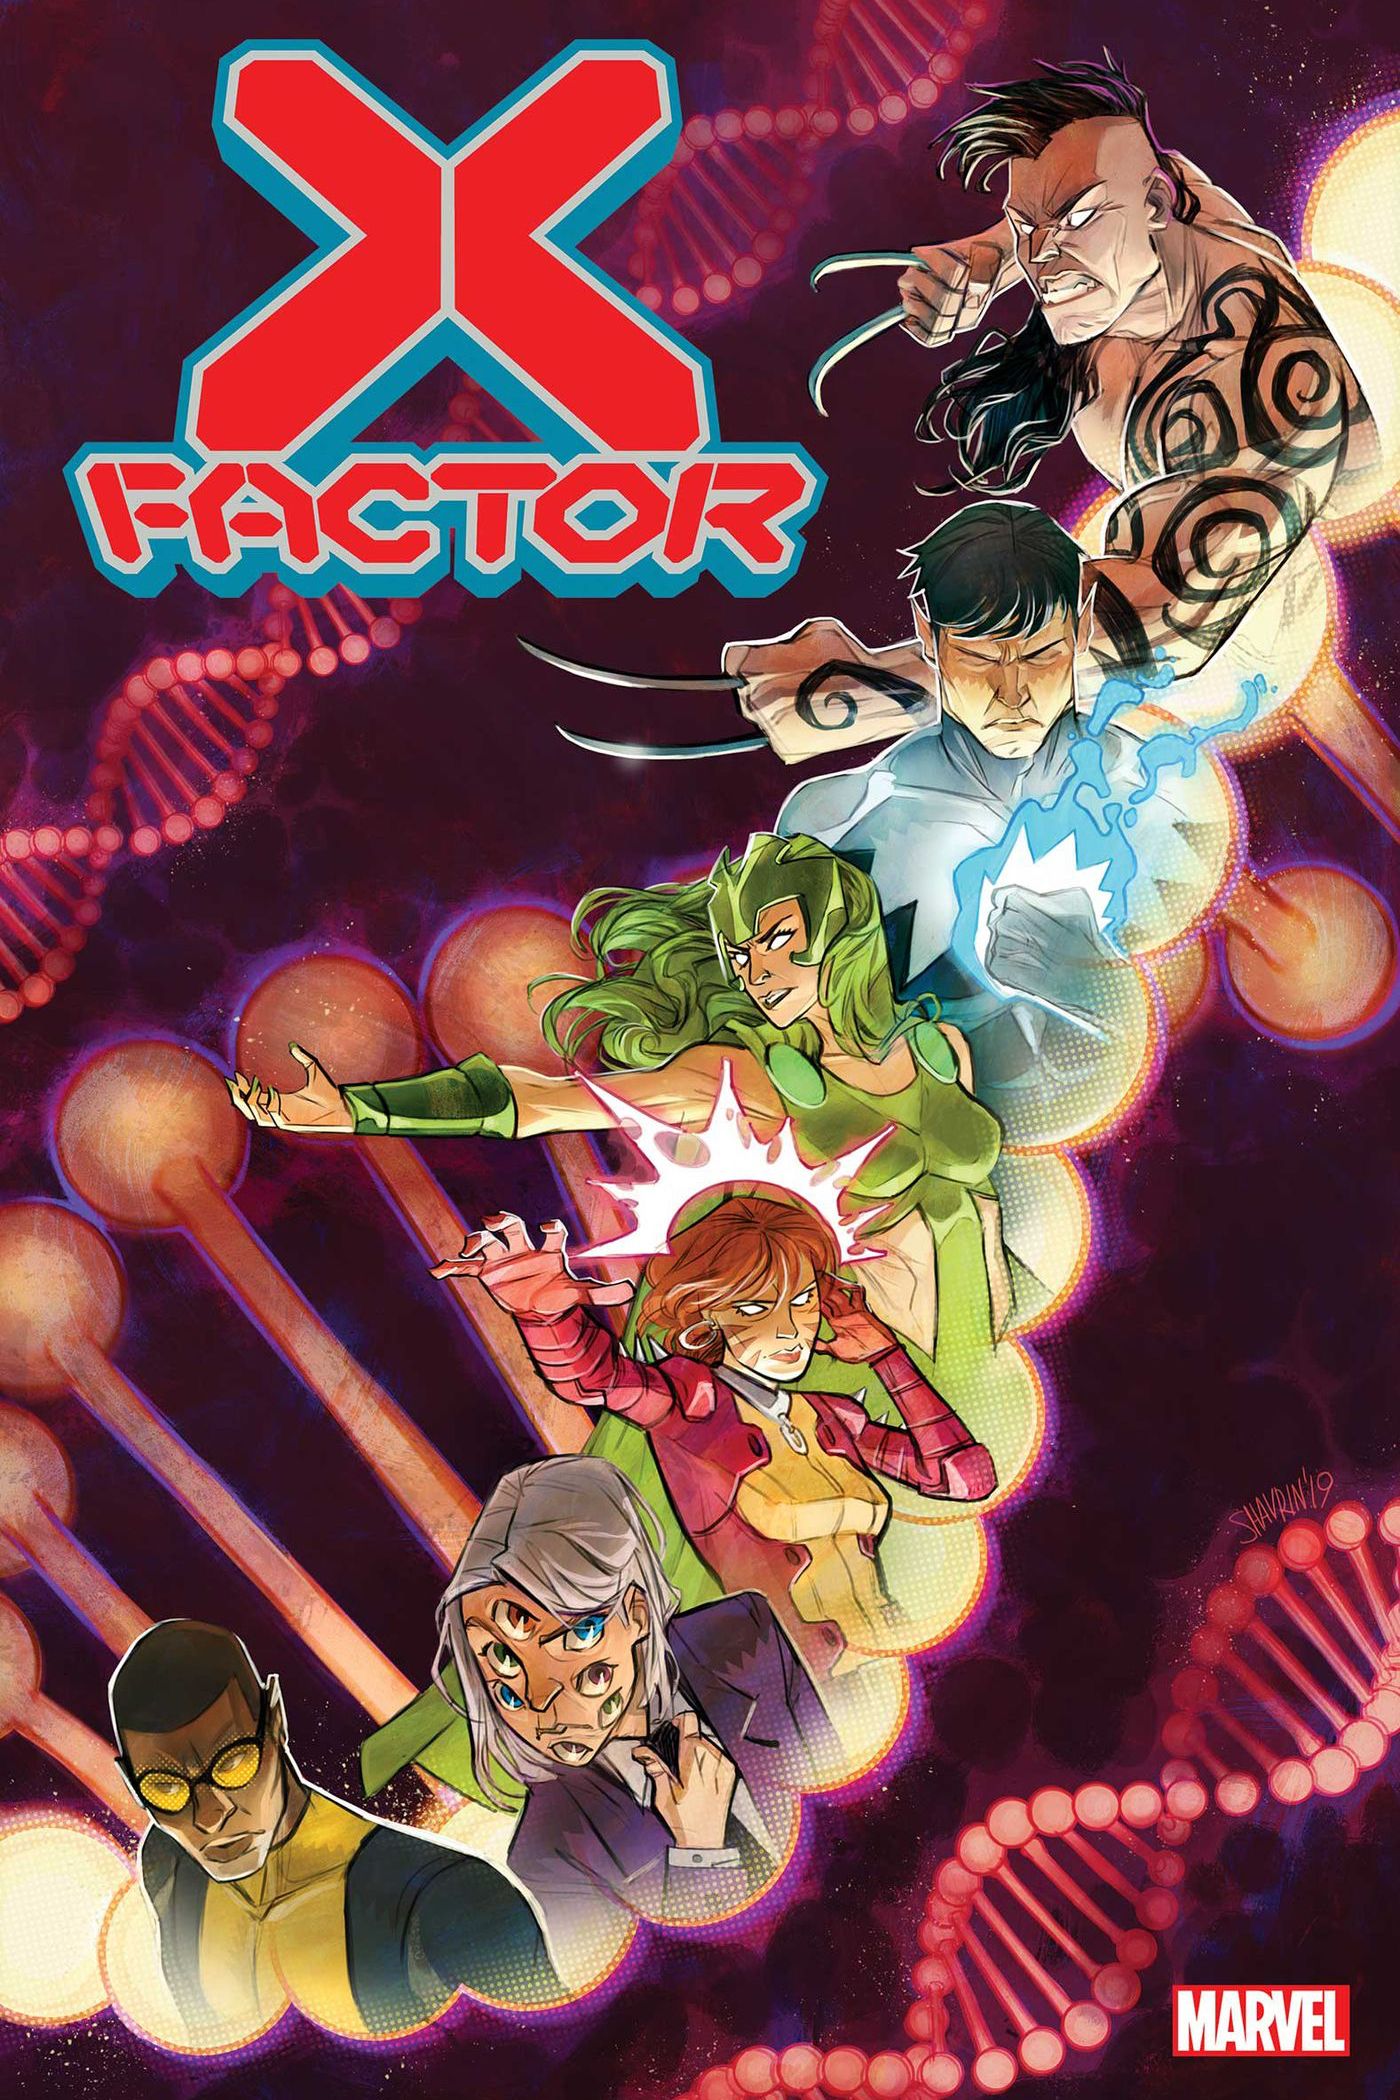 Capa de quadrinhos do Marvel X Factor